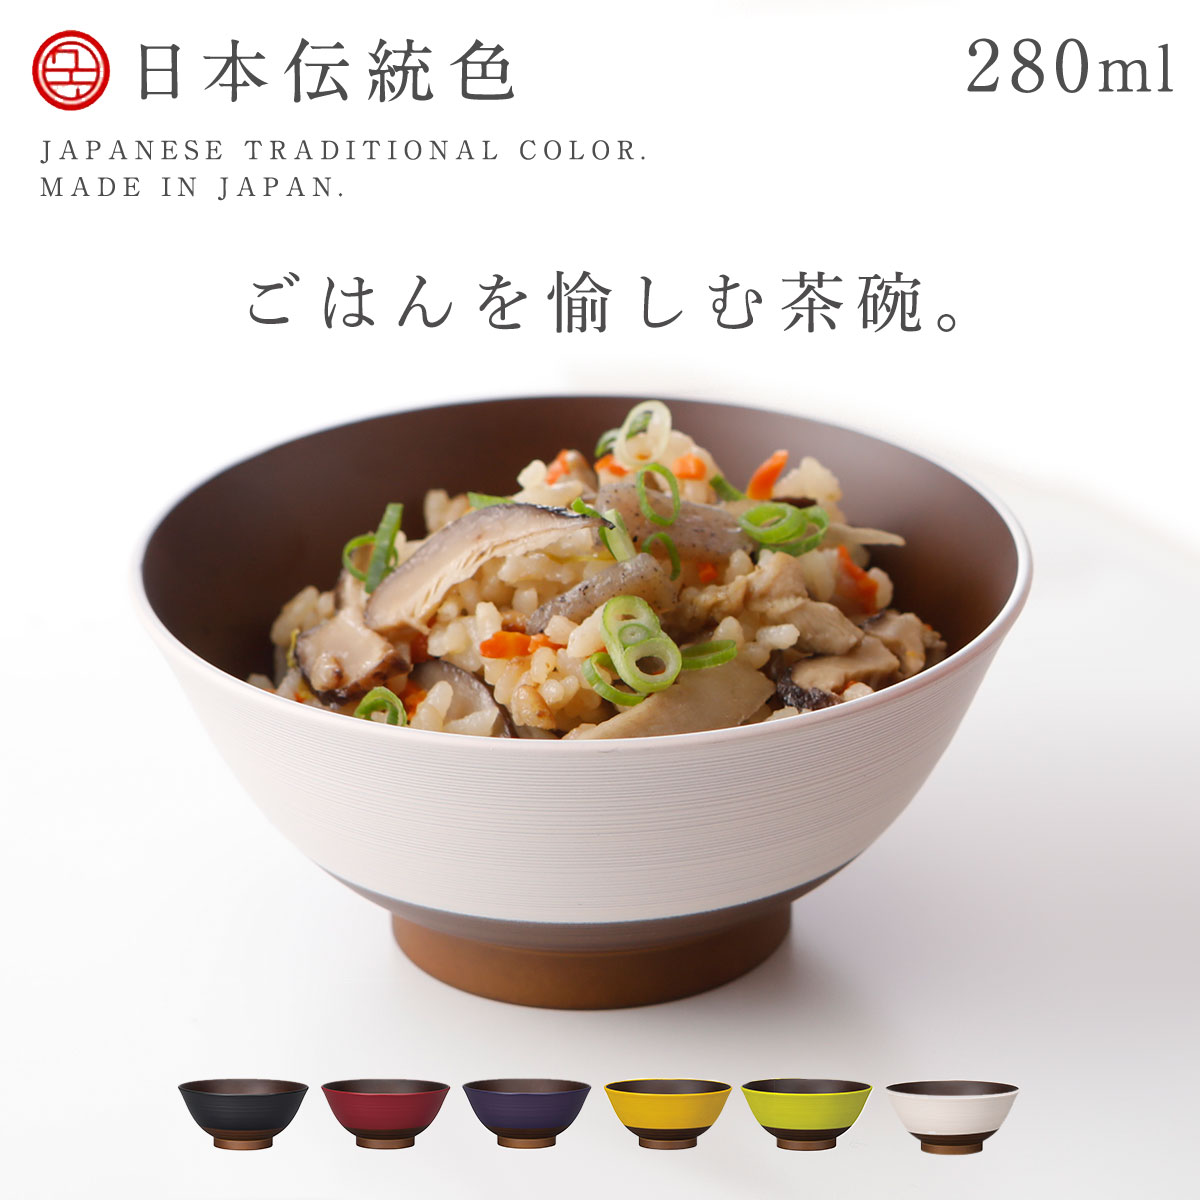 茶碗 ごはん 日本伝統色シリーズ 280ml お椀 日本製 